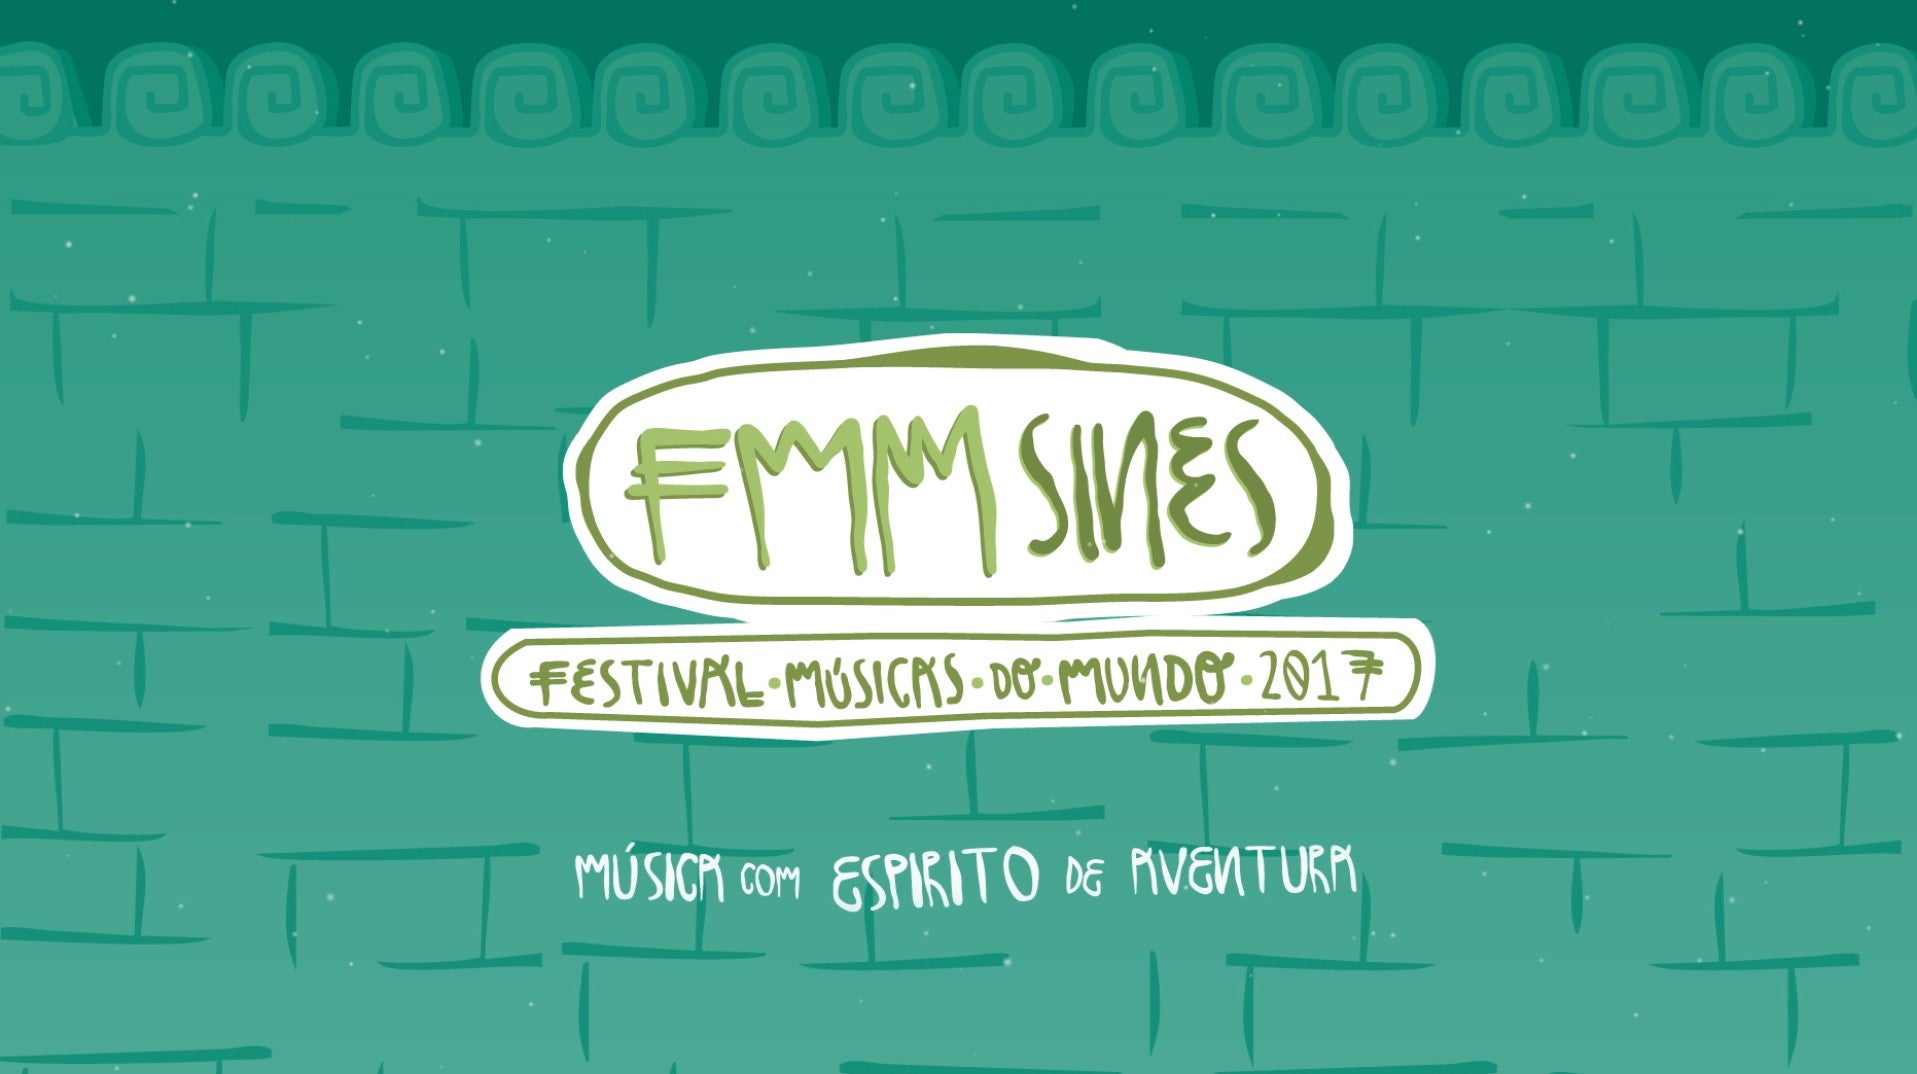 FMM - Festival Msicas do Mundo - Sines 2017